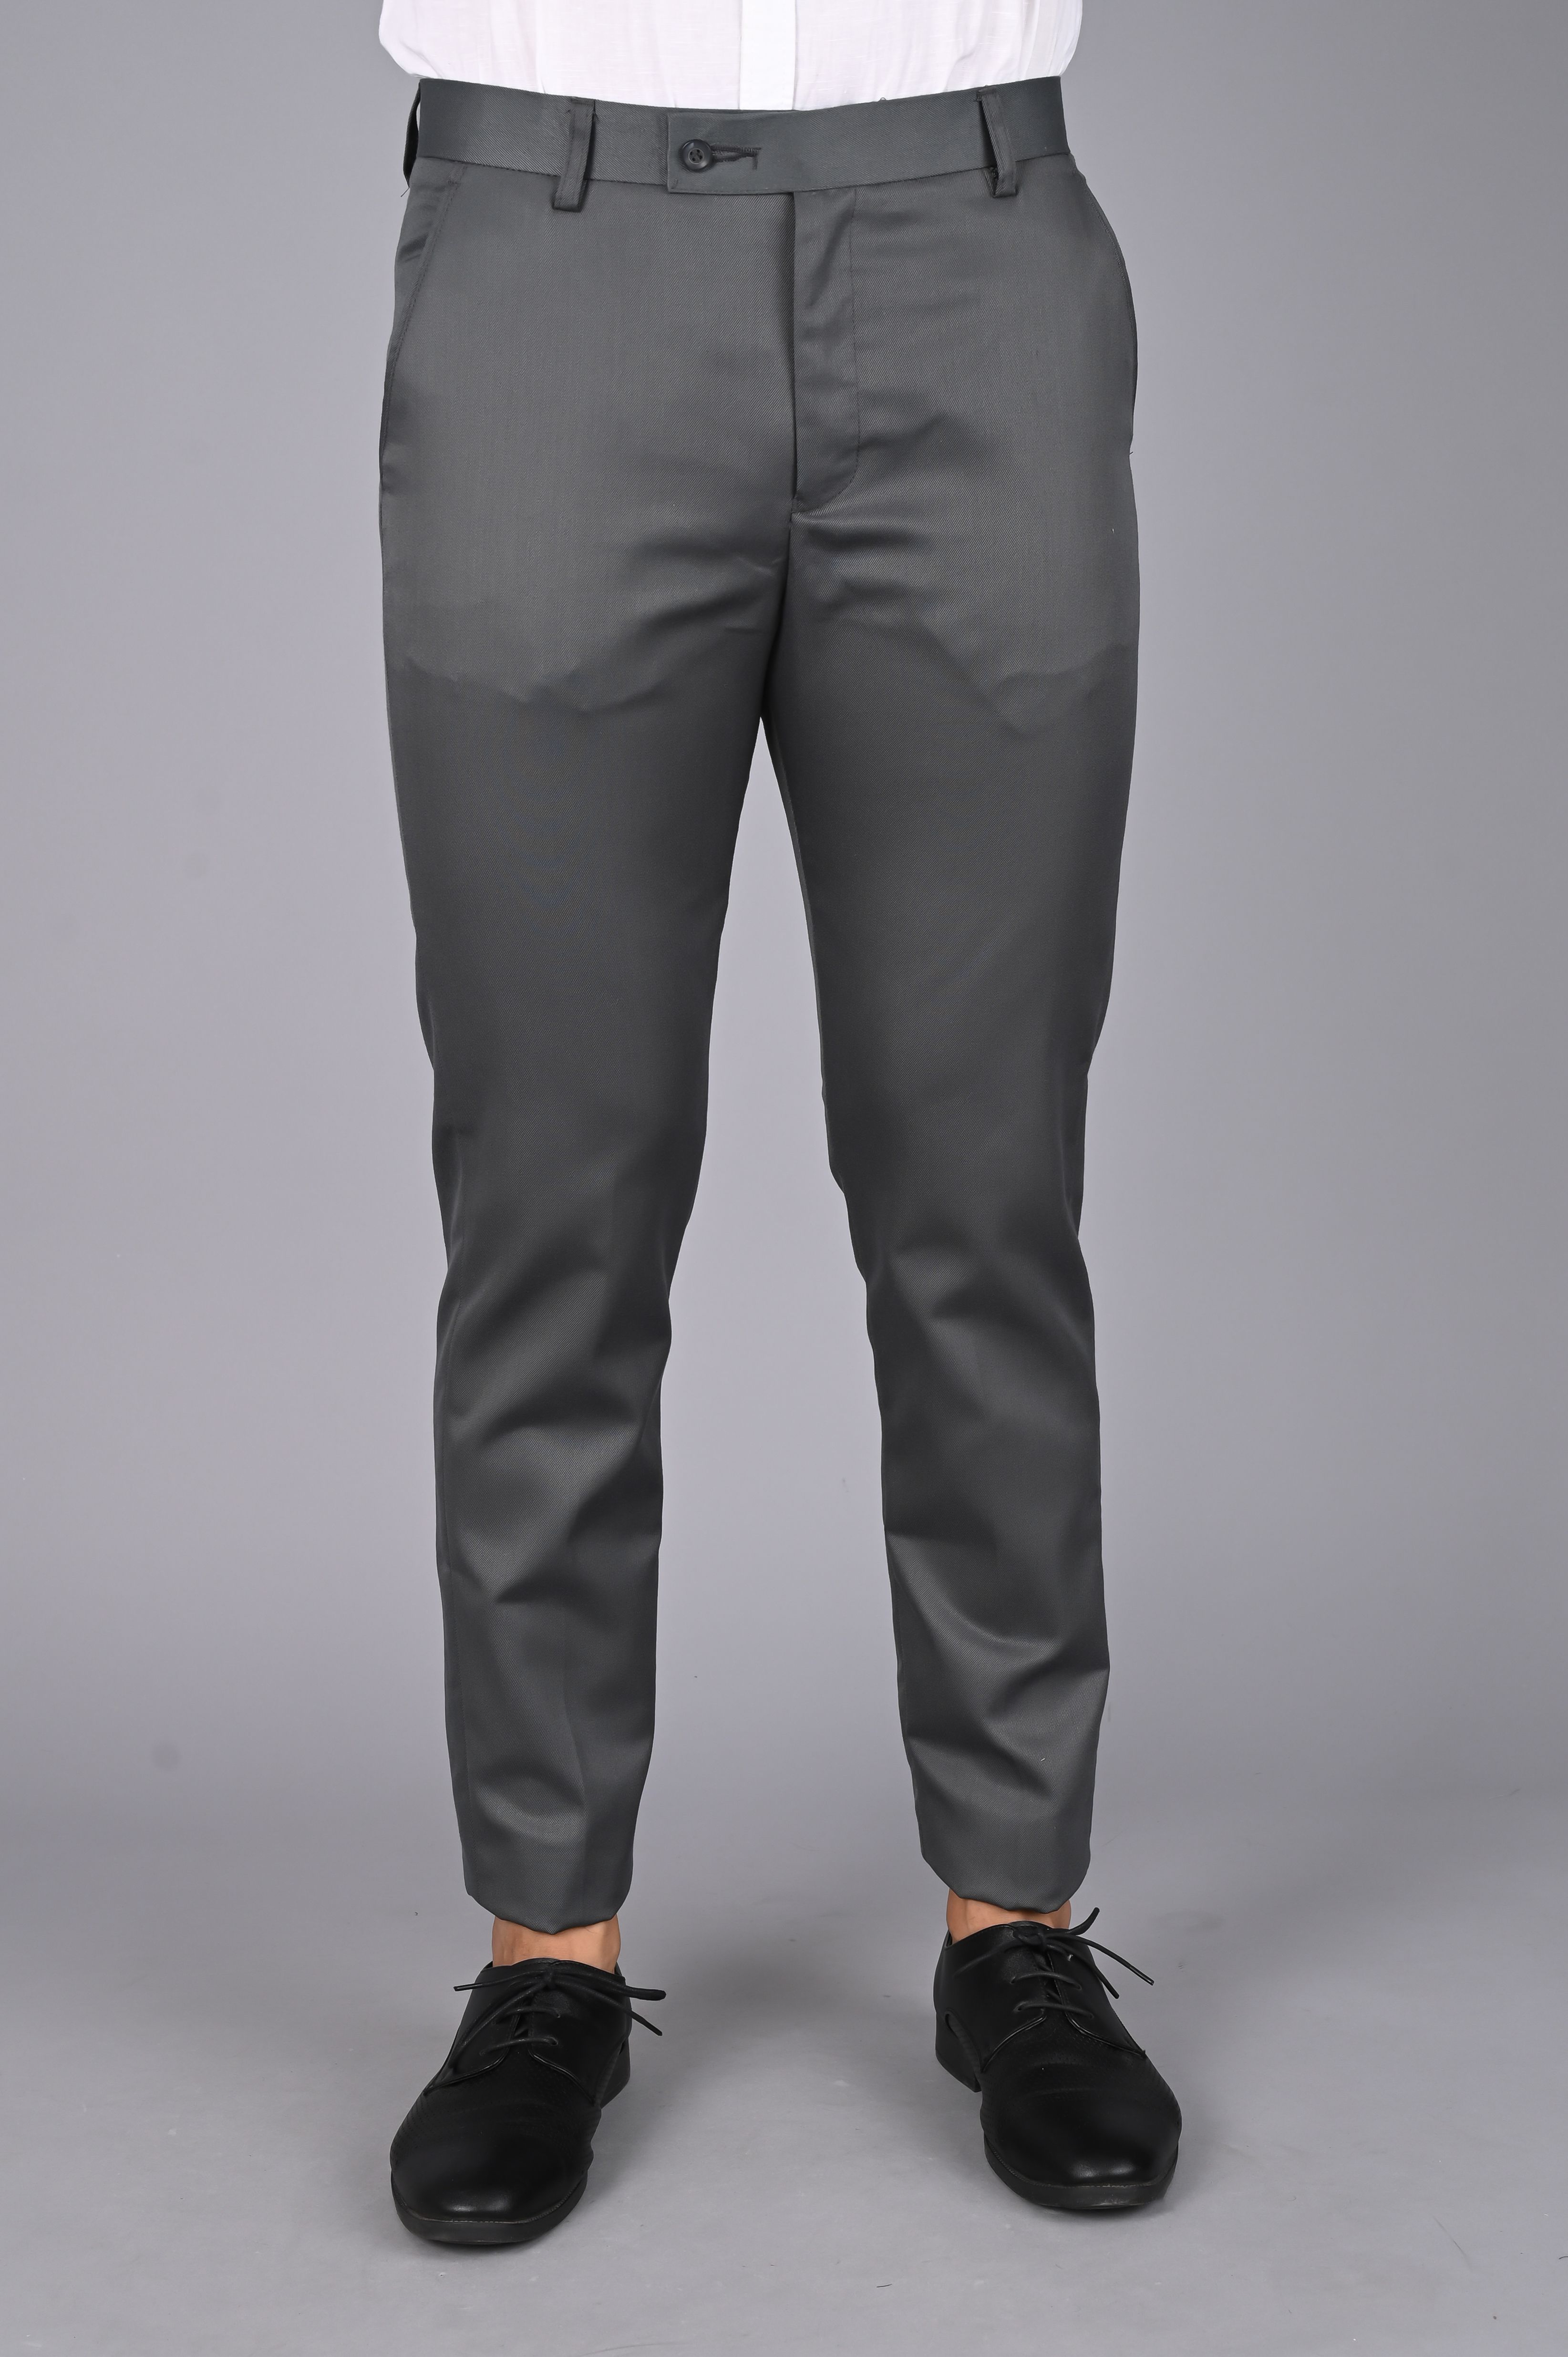     			MANCREW - Grey Viscose Slim - Fit Men's Formal Pants ( Pack of 1 )